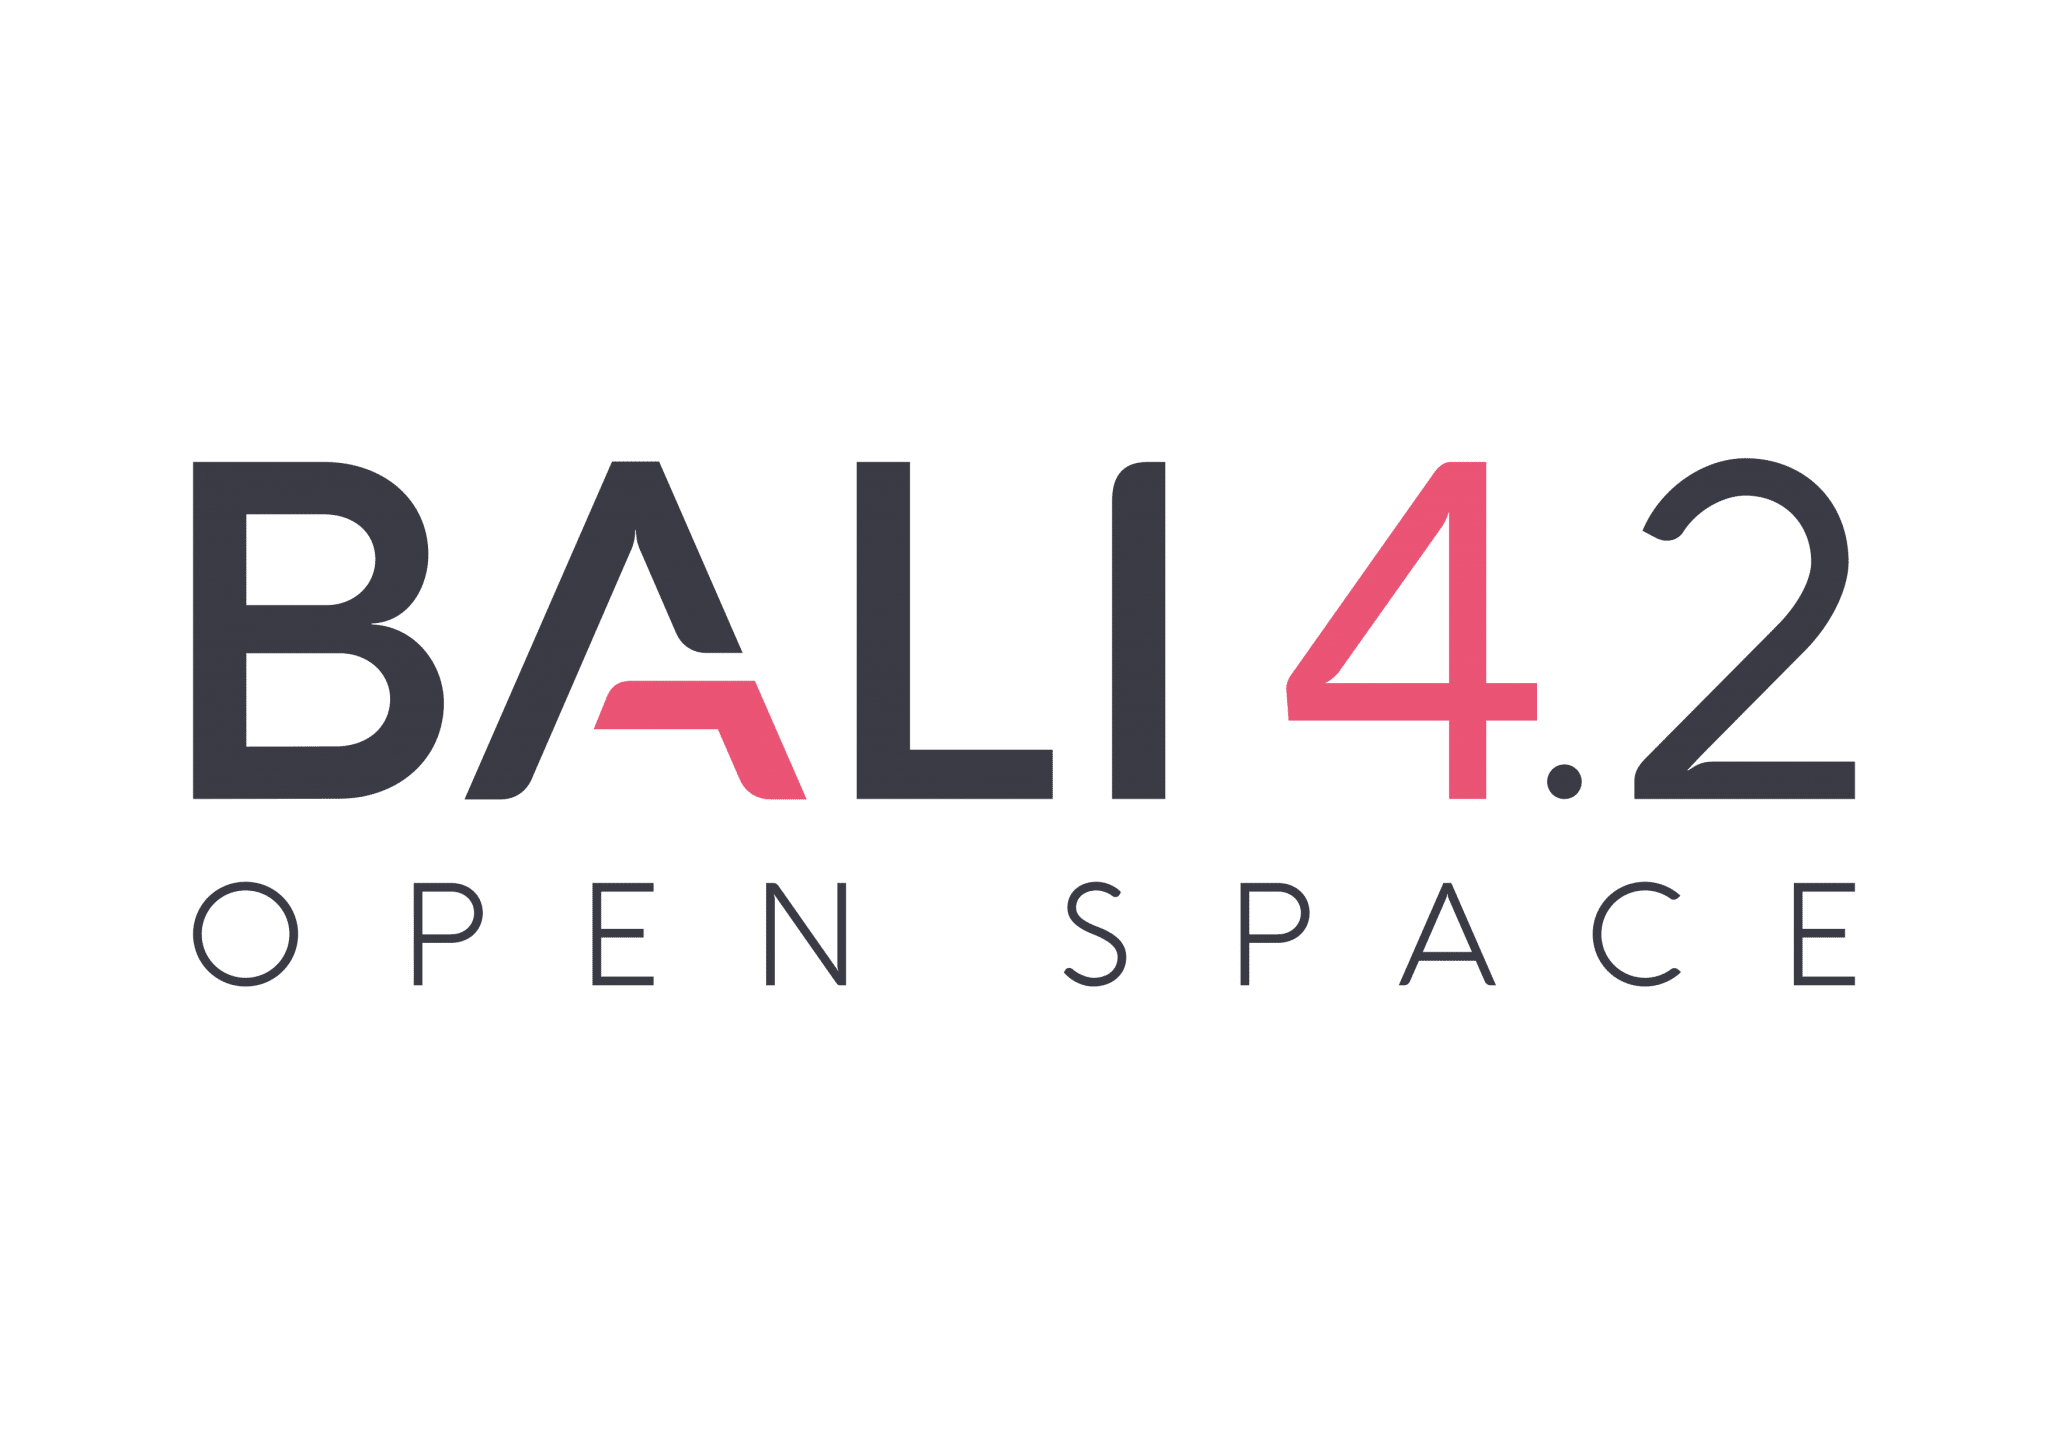 BALI 4.2